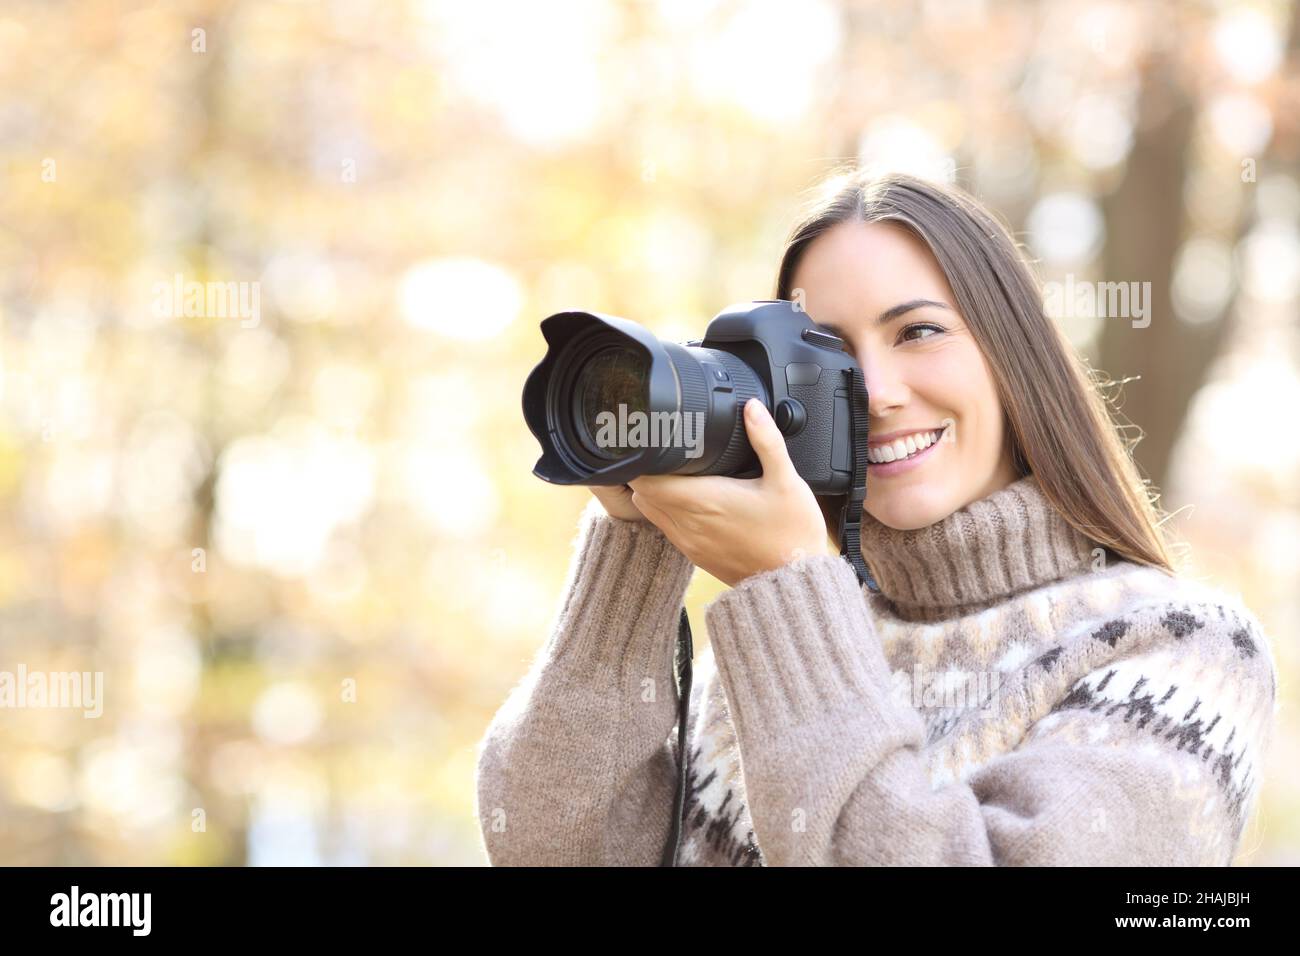 Chica con cámara en sus manos tomando fotos fotografías e imágenes de alta  resolución - Alamy